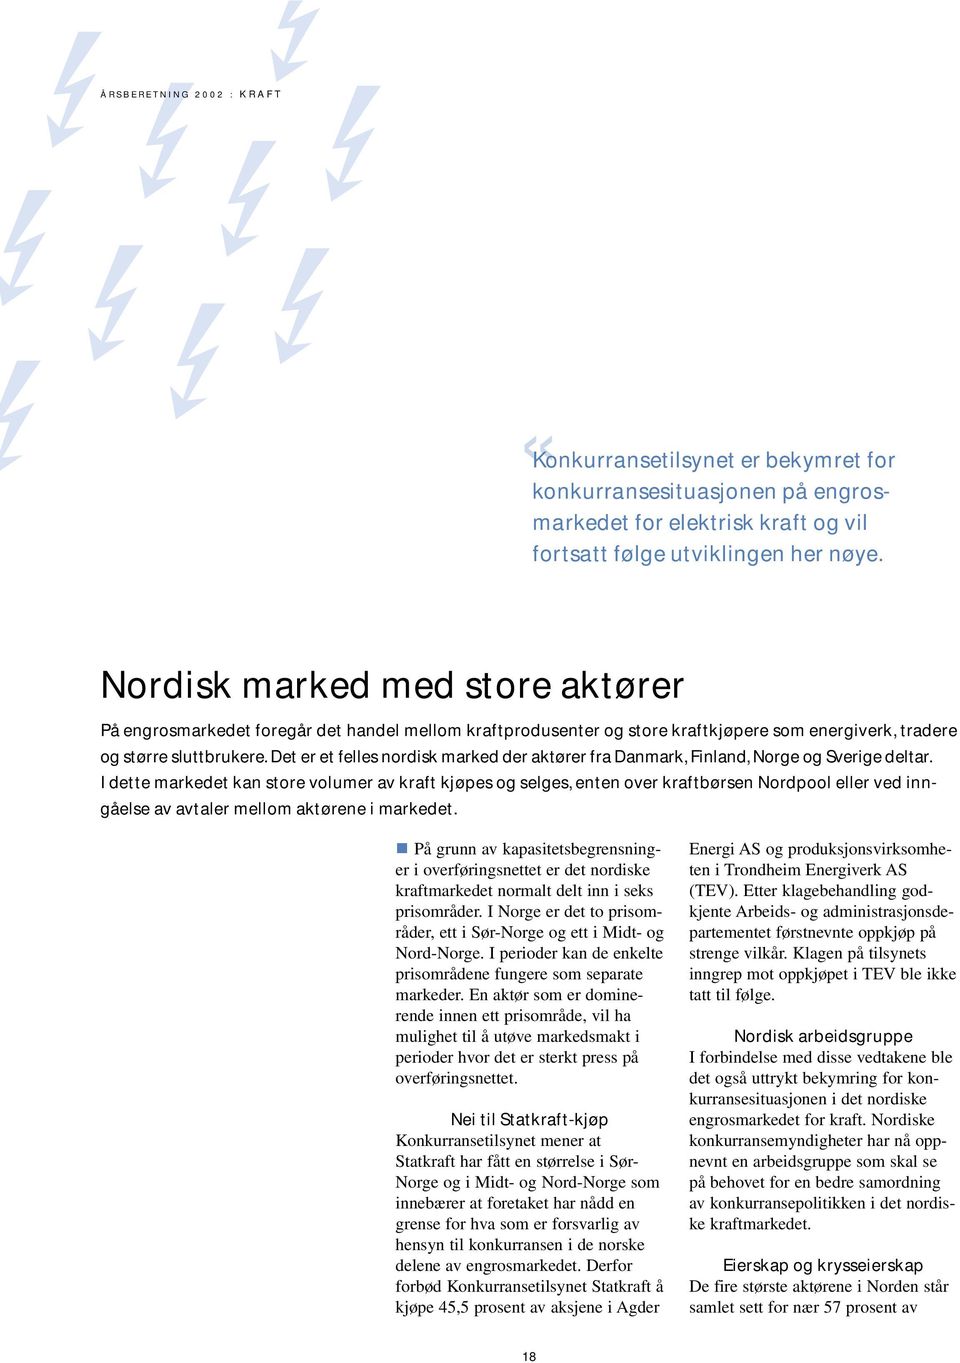 Det er et felles nordisk marked der aktører fra Danmark, Finland, Norge og Sverige deltar.